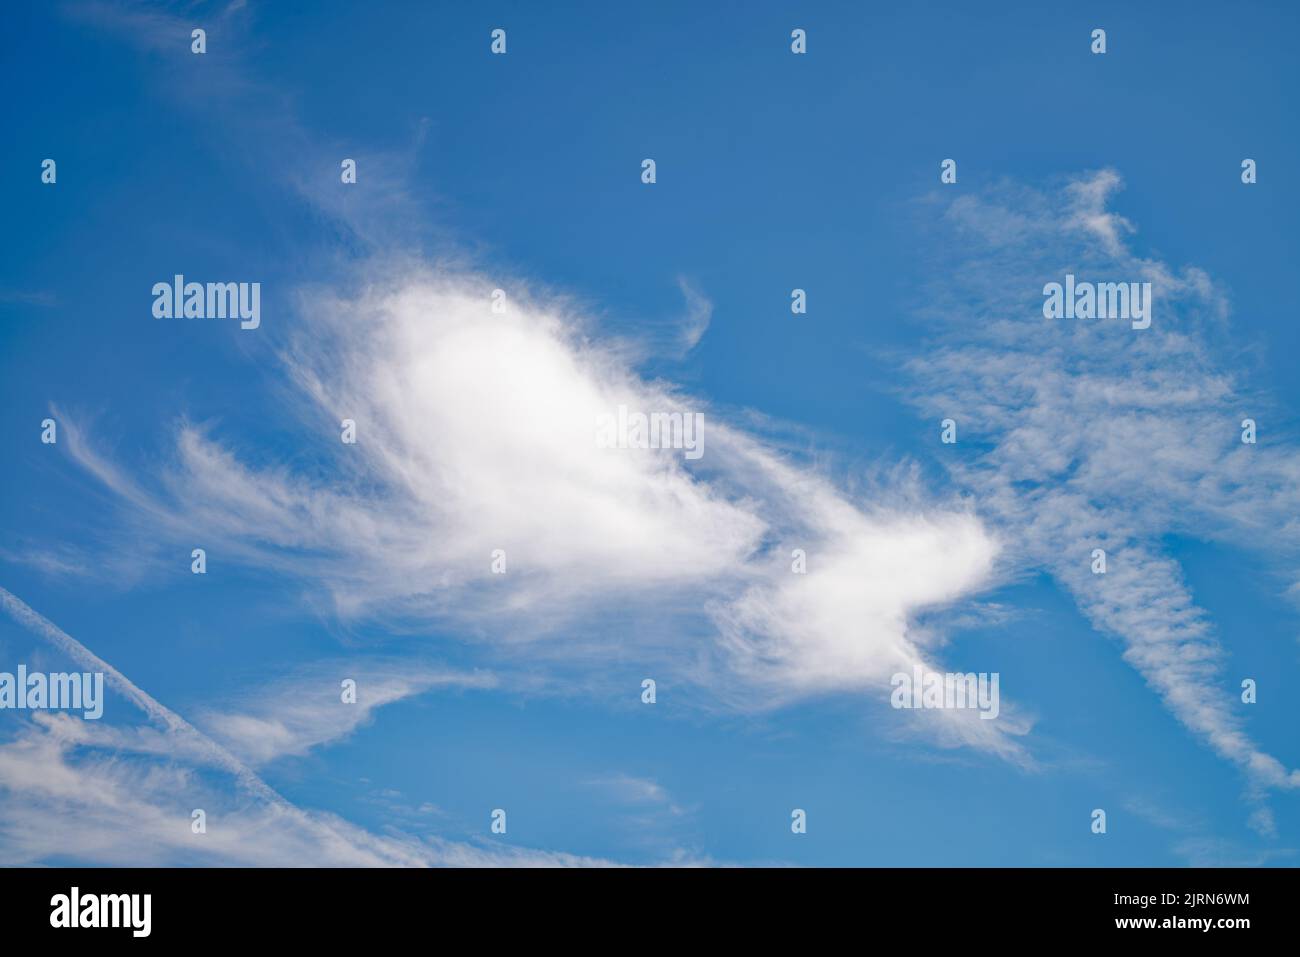 Zufällige abstrakte unregelmäßige Formen, die von wispy weißen Wolken in großer Höhe gegen einen tiefblauen Himmel gebildet werden Stockfoto